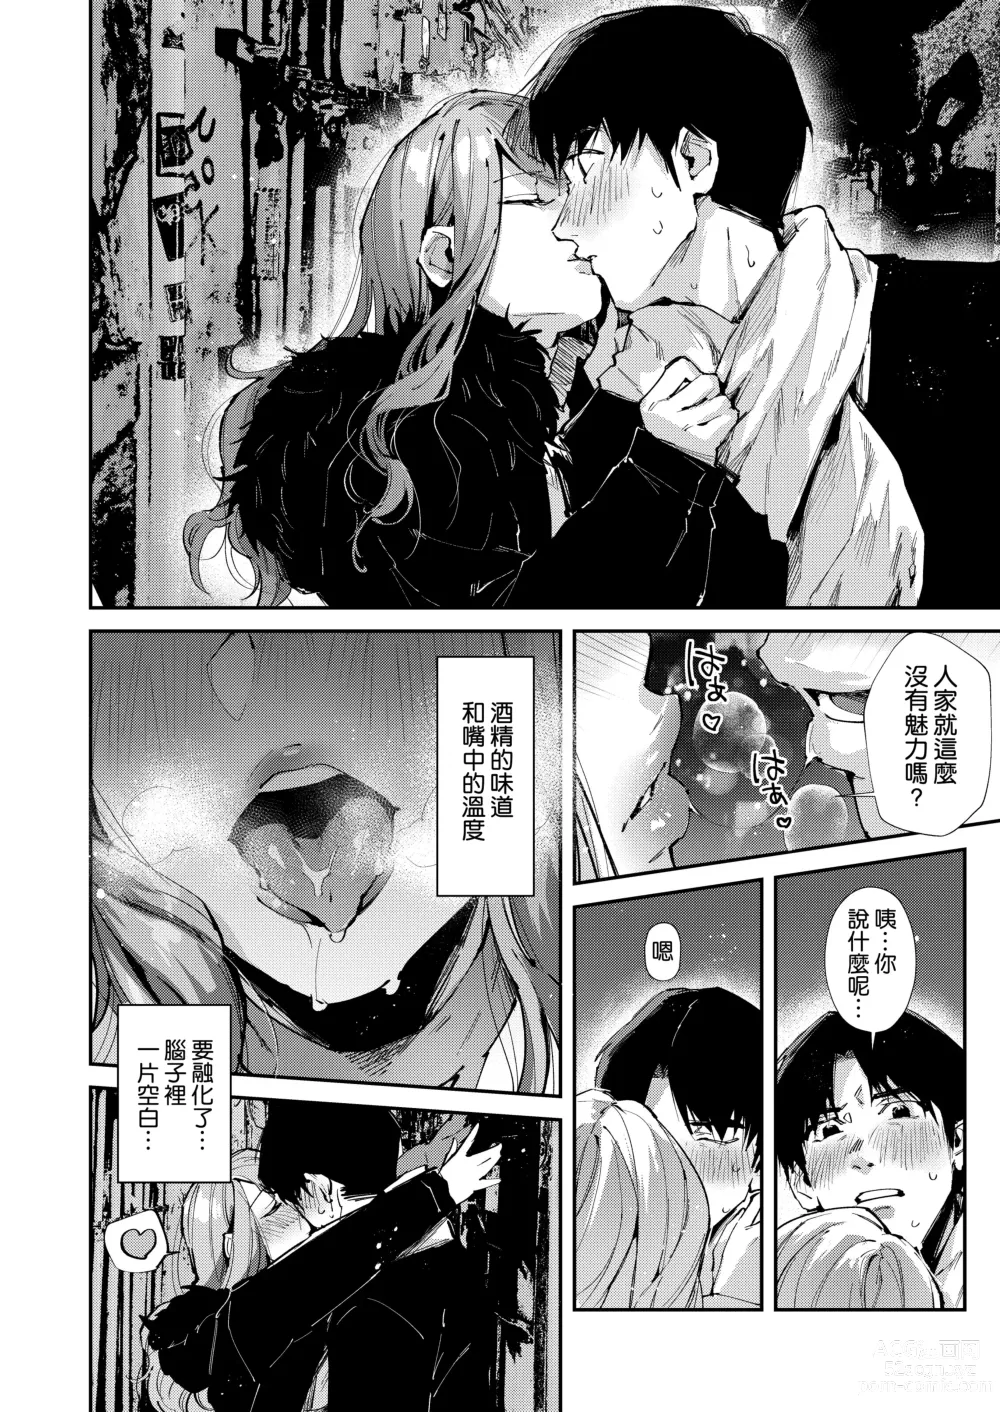 Page 7 of doujinshi Ore no Gal wa Koko ni Iru.